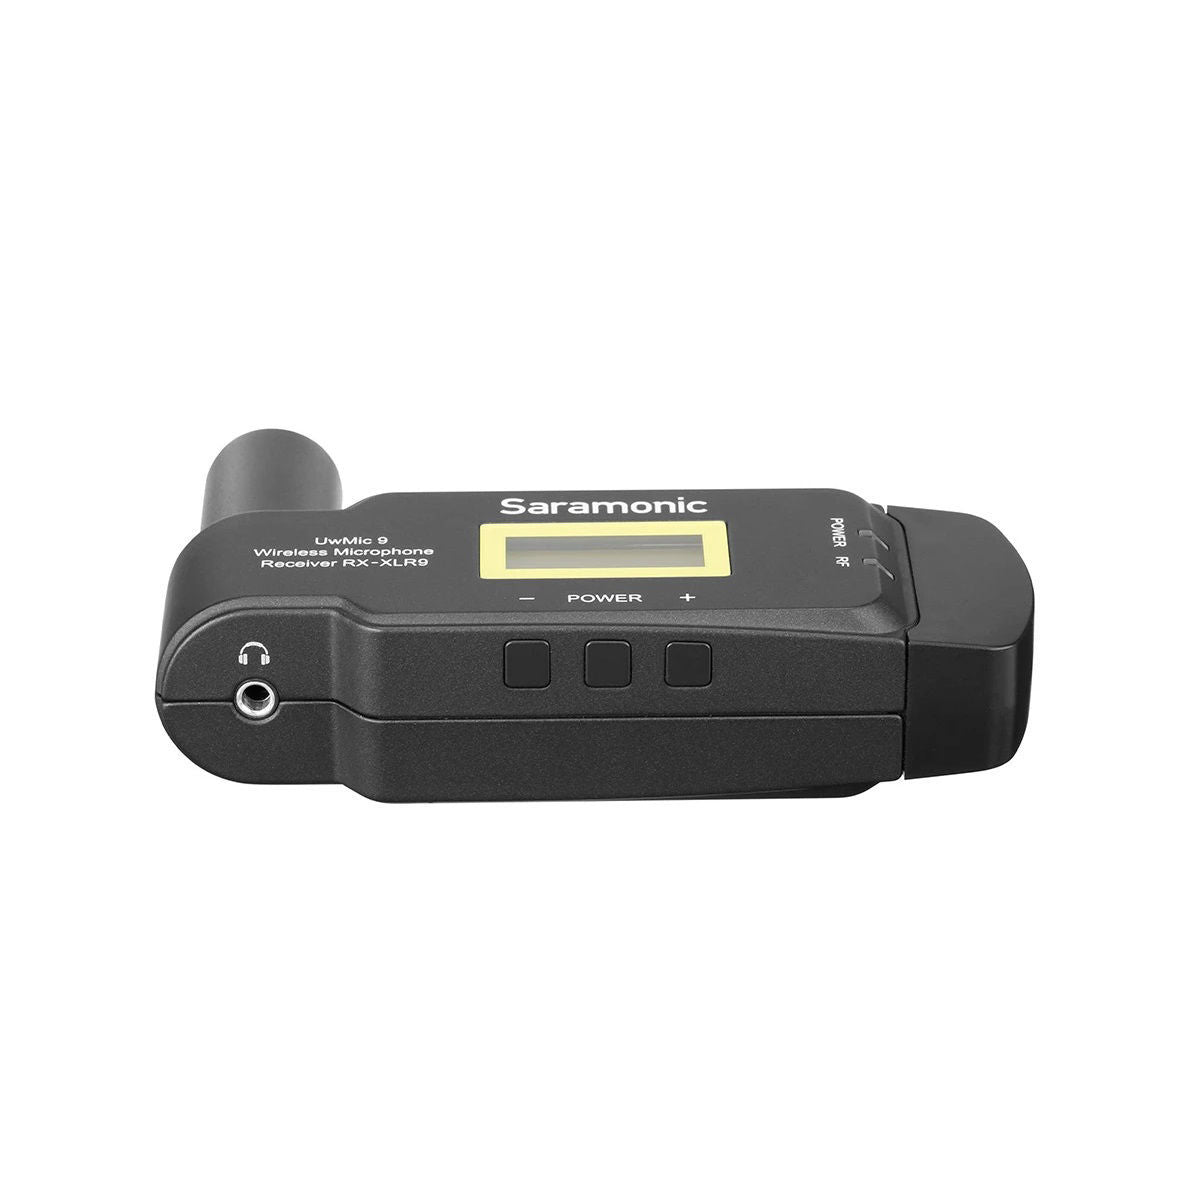 Saramonic Rx-xlr9 Dual-channel Wireless Plug In Receiver for Uwmic9 System